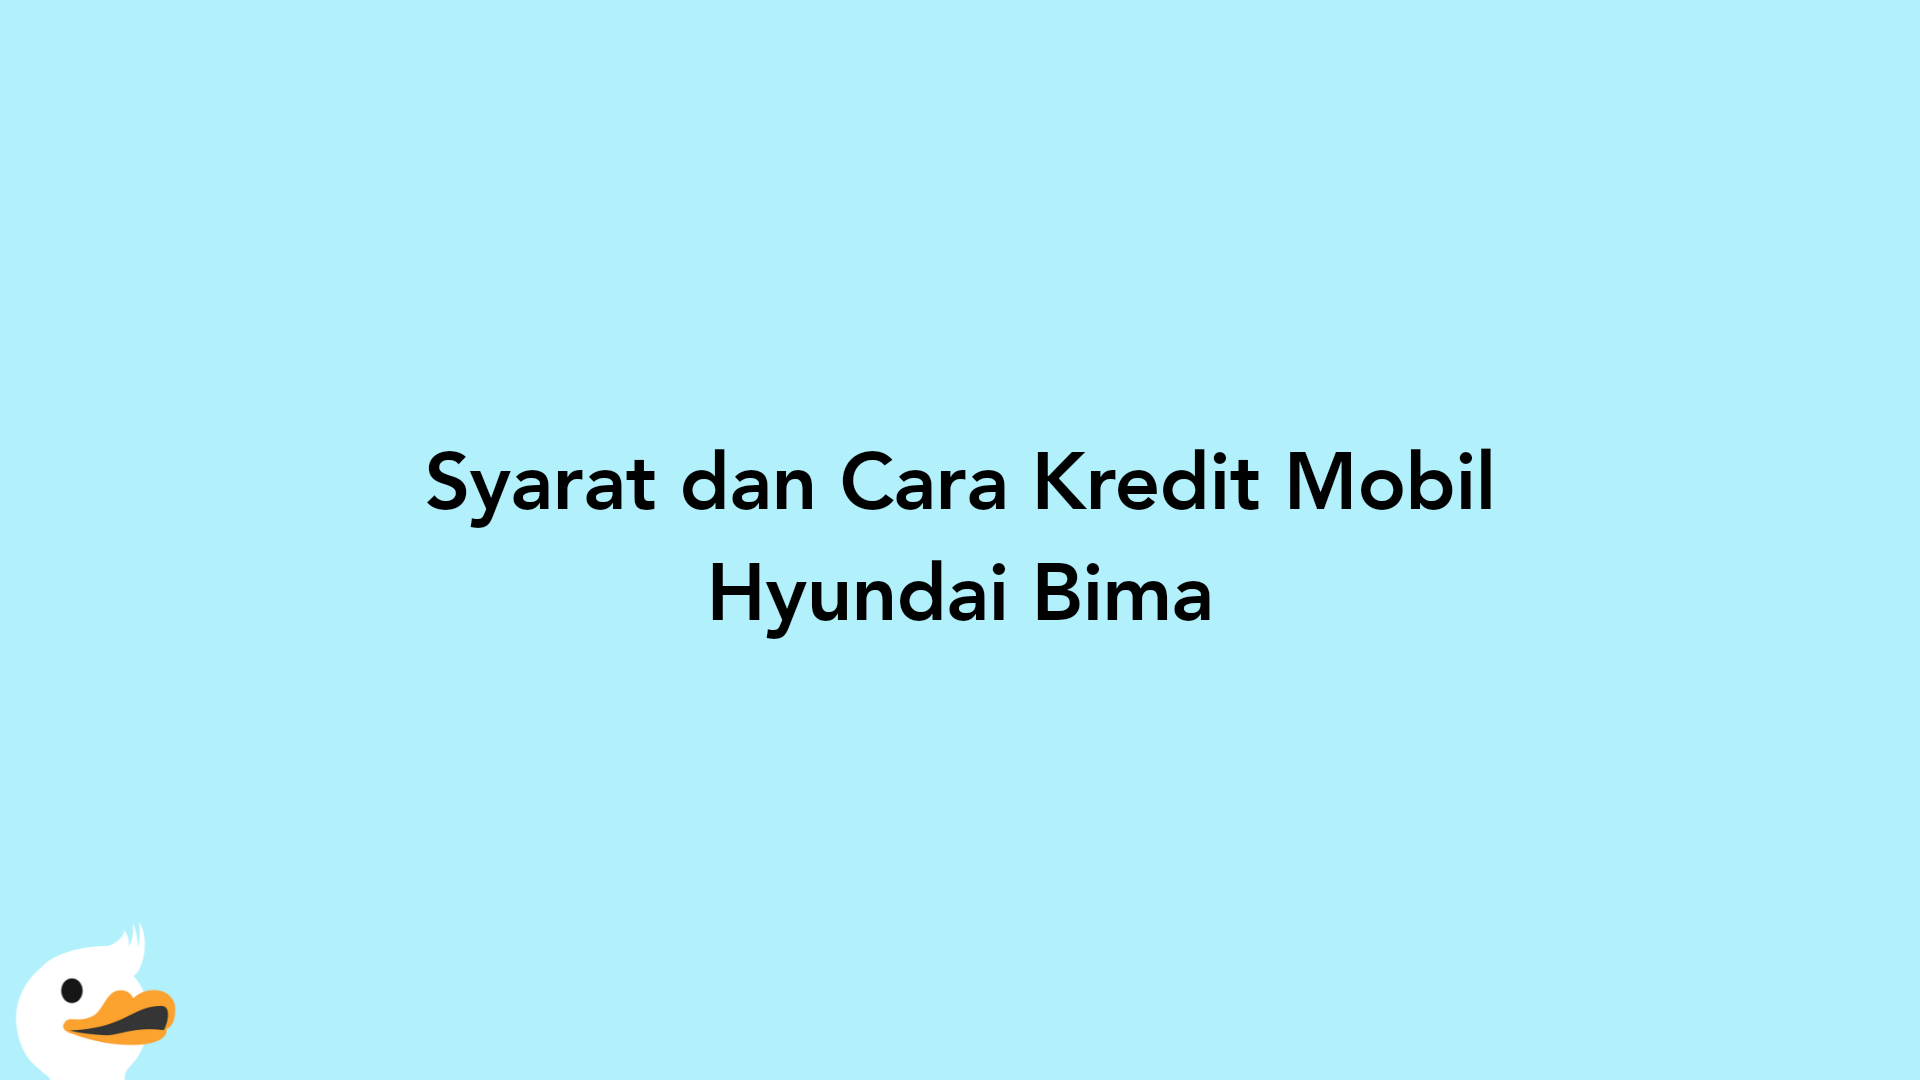 Syarat dan Cara Kredit Mobil Hyundai Bima